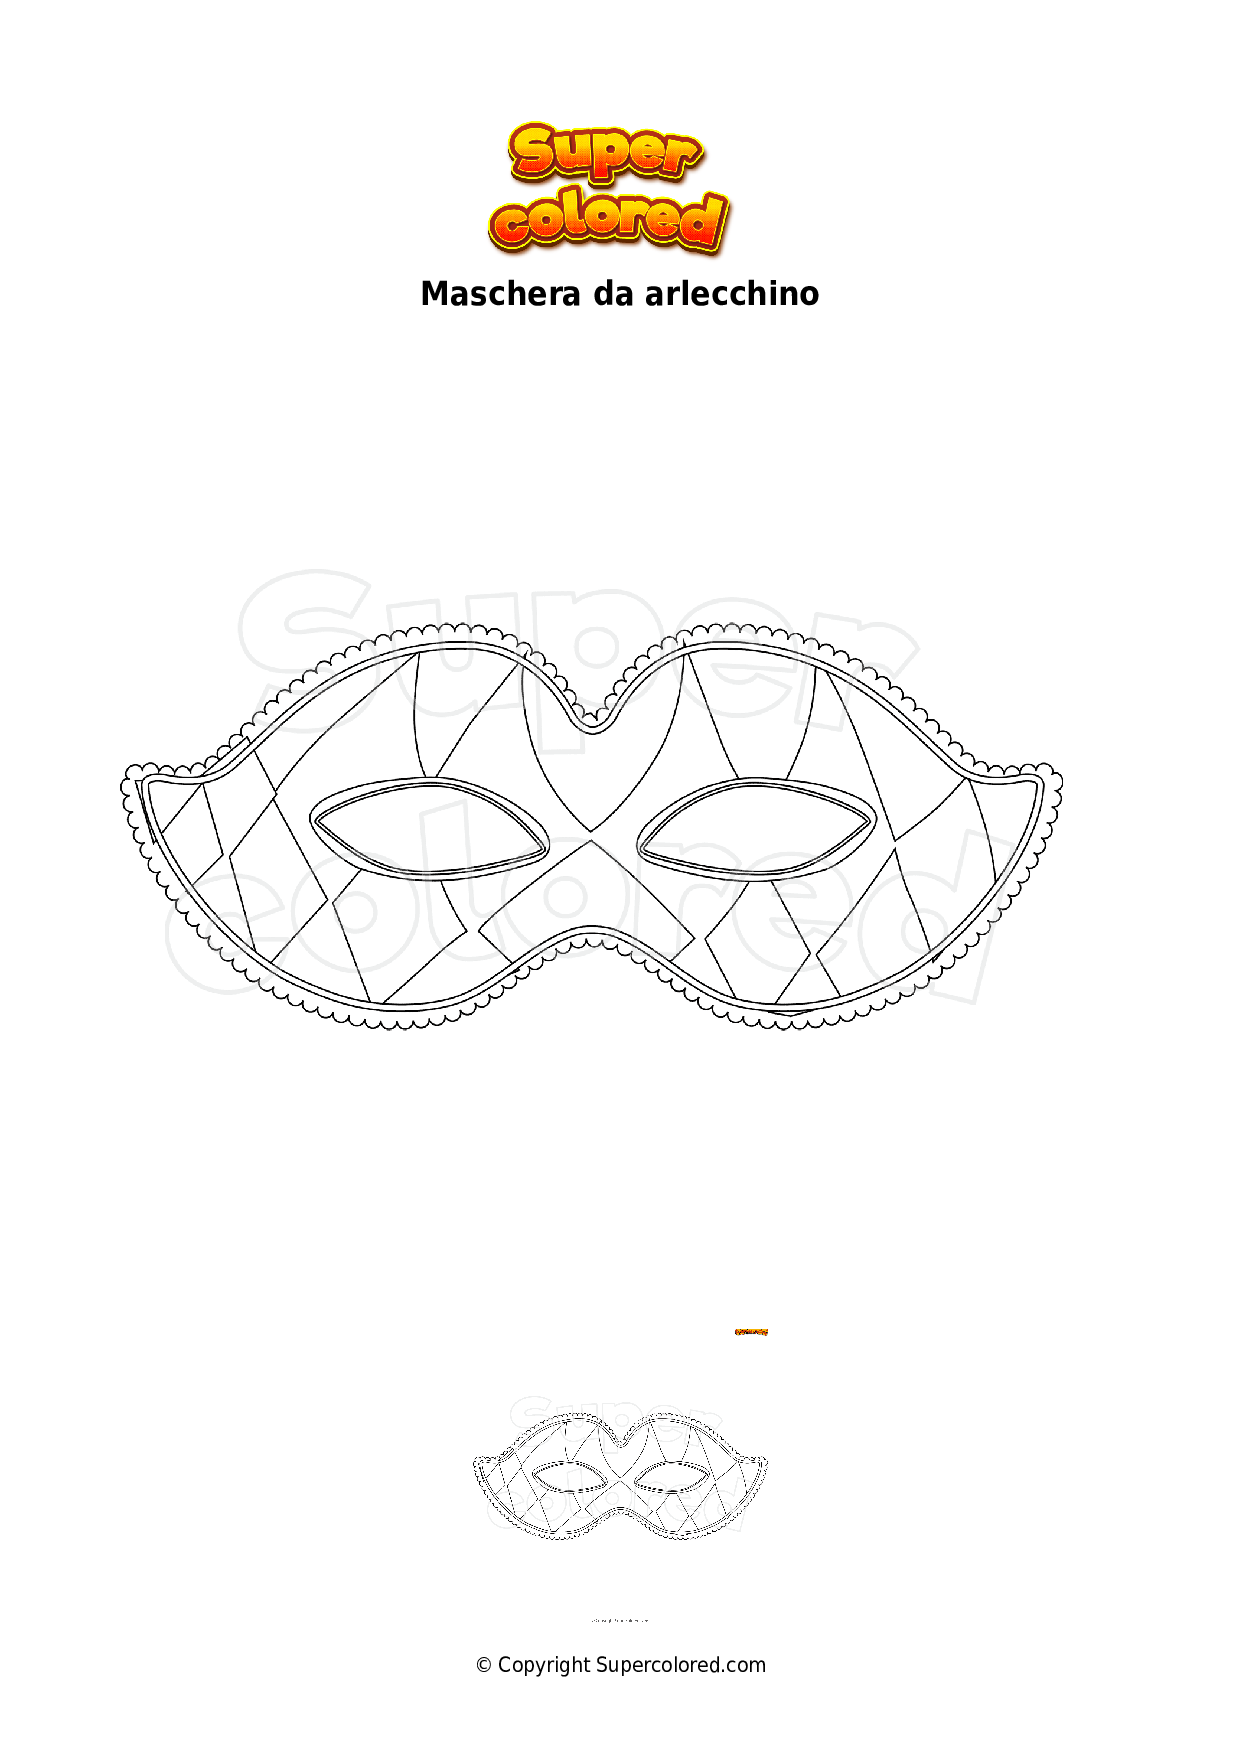 https://images.supercolored.com/disegno-da-colorare-maschera-da-arlecchino_c5845e.png